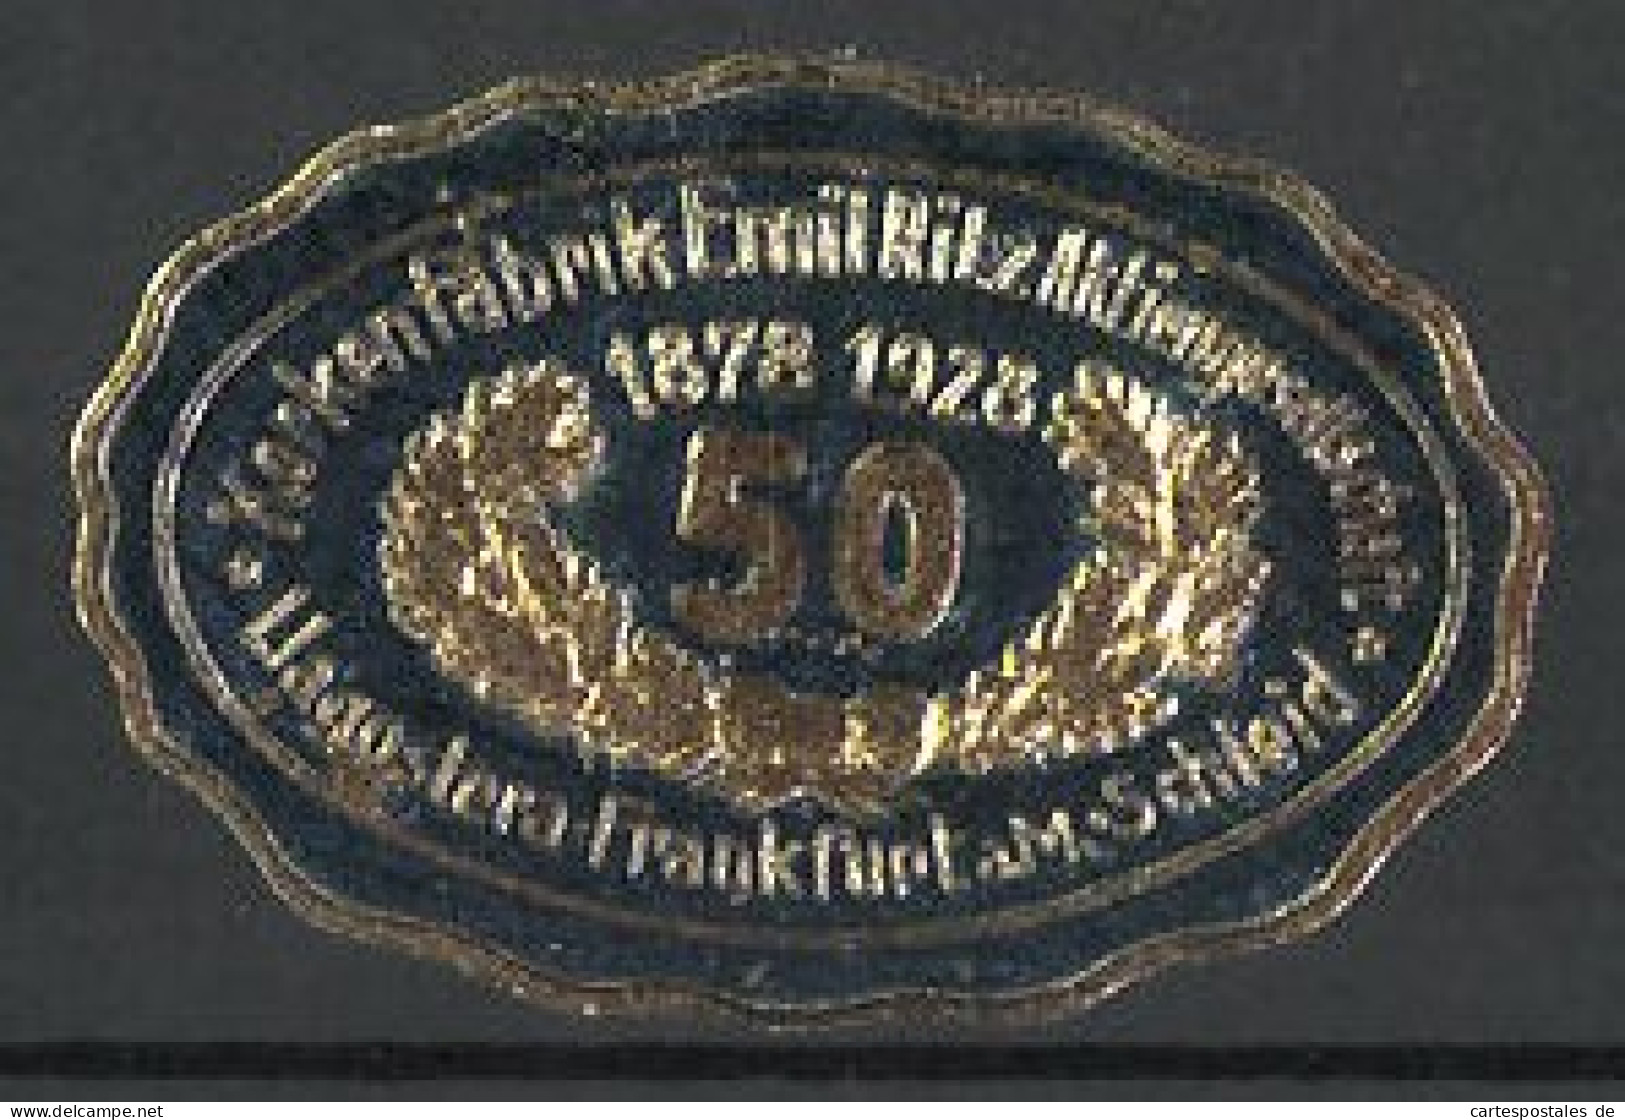 Präge-Reklamemarke Korkenfabrik Emil Ritz, Frankfurt / Main, 50 Jähr. Jubiläum, 1878-1928  - Vignetten (Erinnophilie)